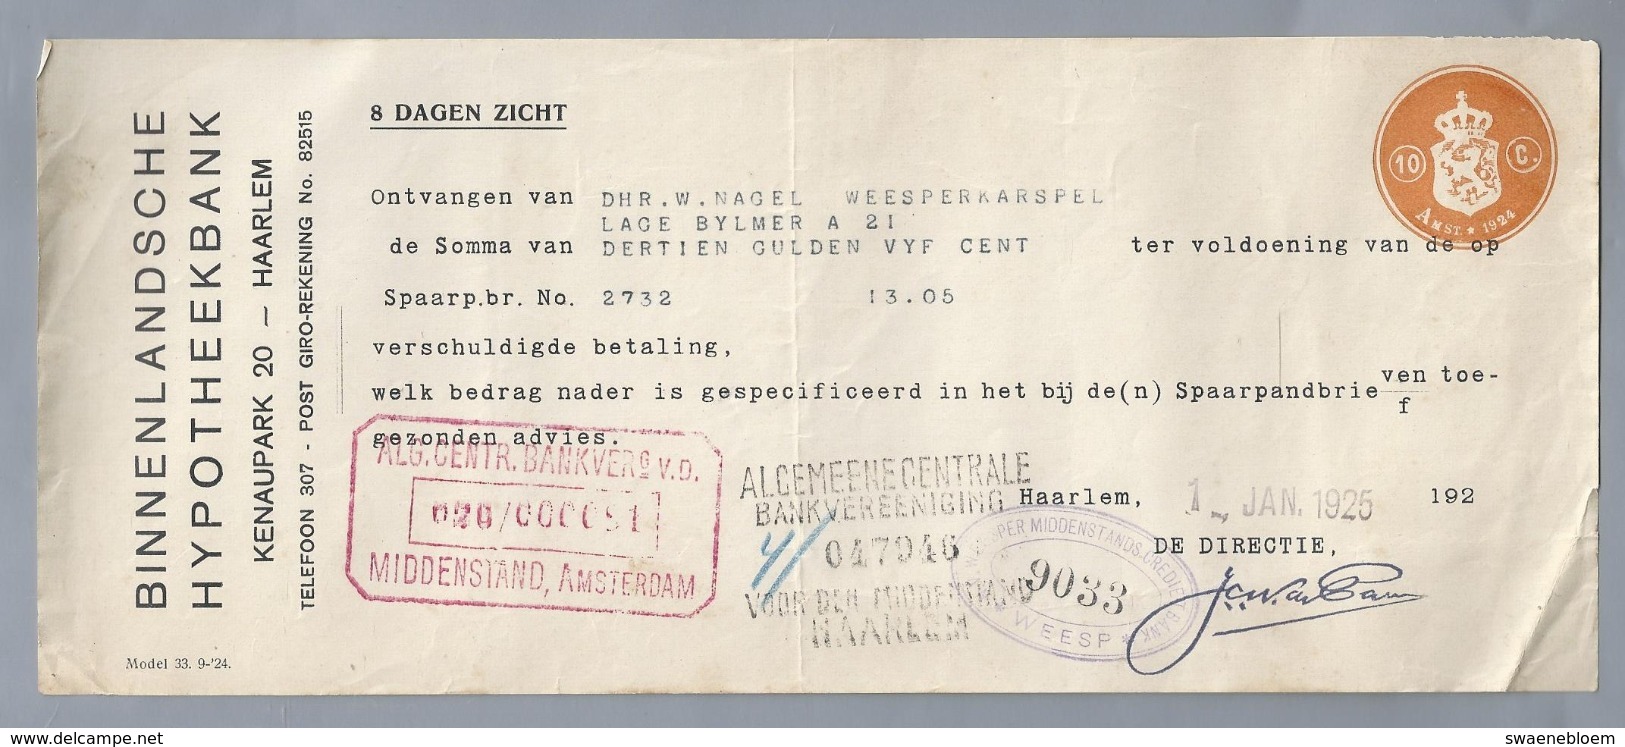 NL.- Betaal Bewijs Van De BINNENLANDSCHE HYPOTHEEKBANK. KENAUPARK 20 HAARLEM. JAN. 1925 - Netherlands